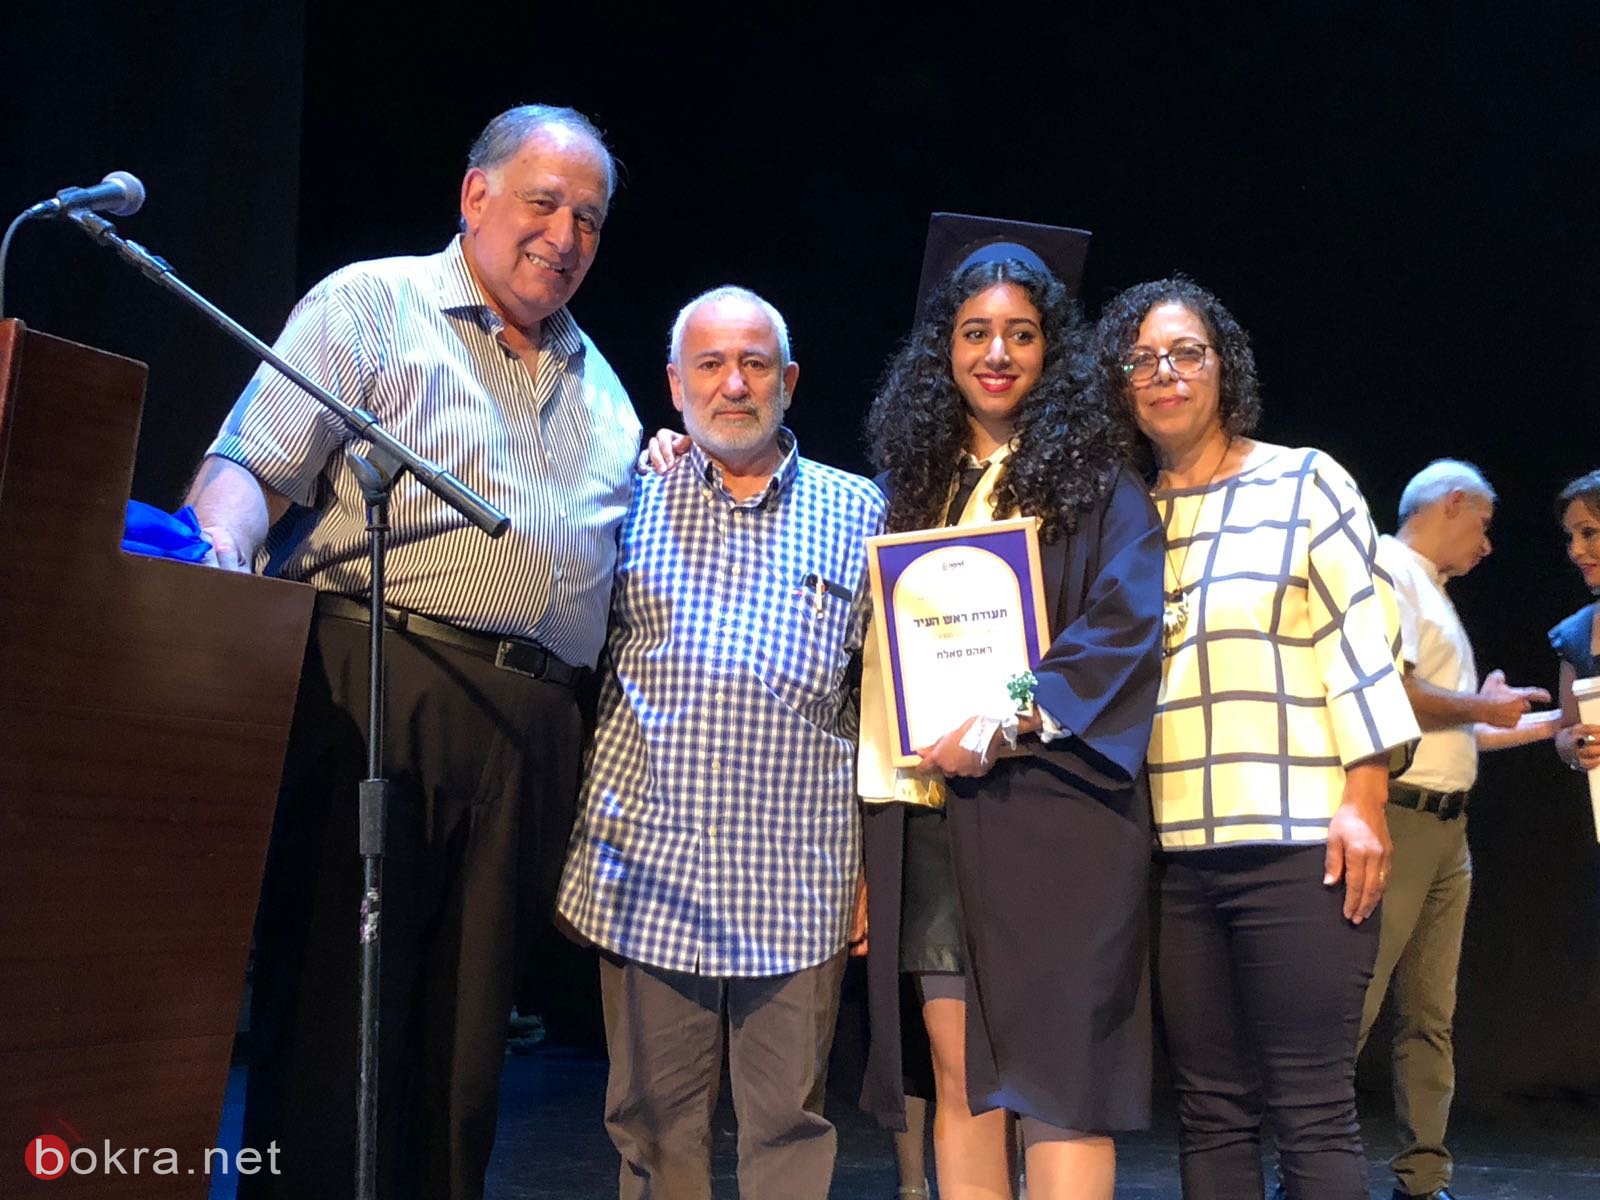 ثانوية الكرمة للعلوم في حيفا تحتفل بتخريج الفوج الثالث من طلاب الثواني عشر-19